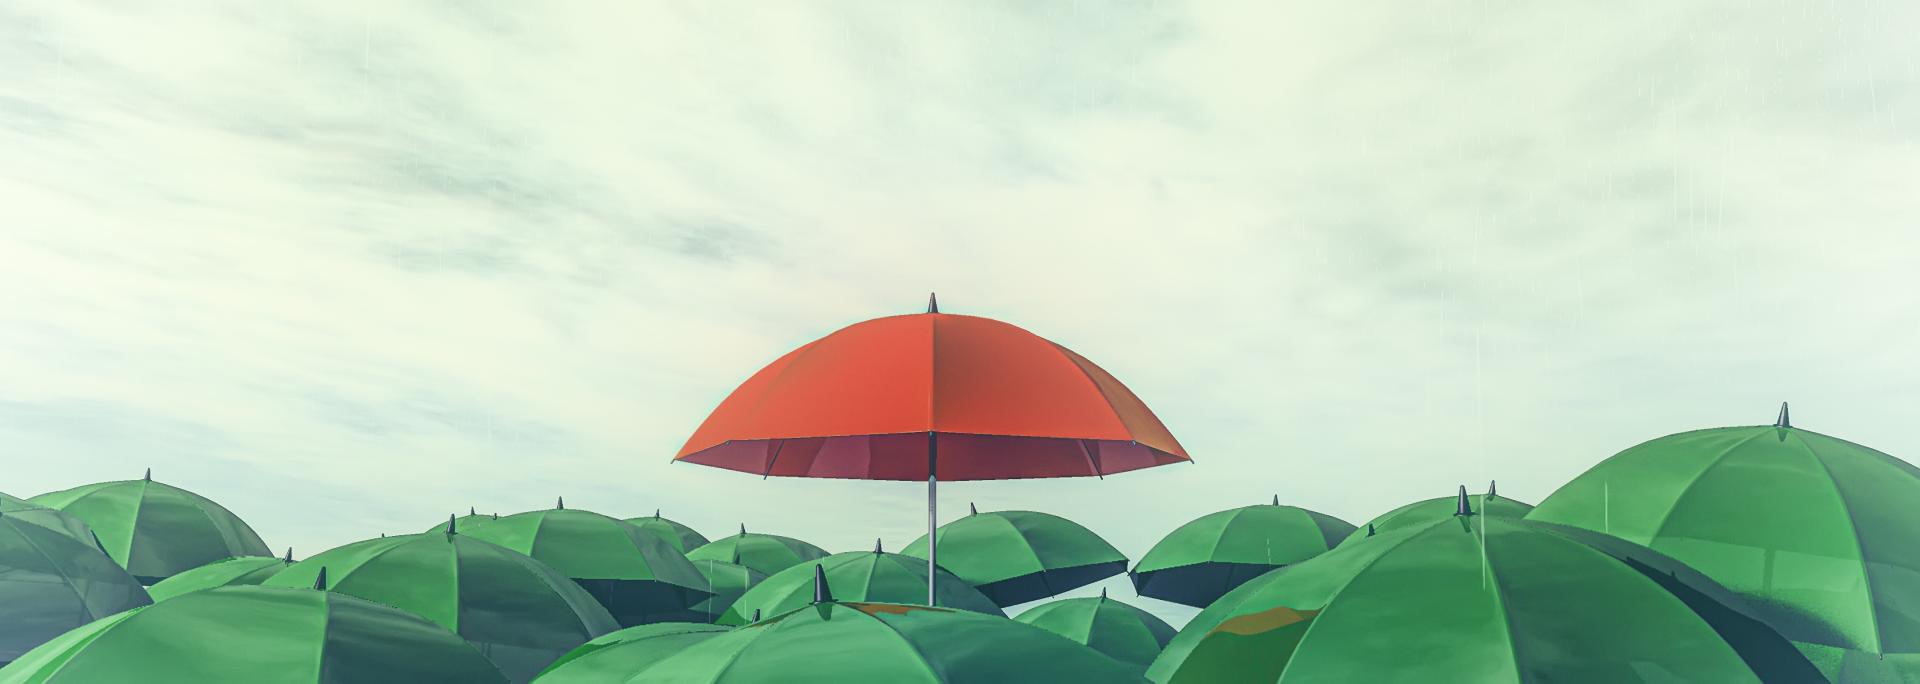 parapluie rouge déployé qui émerge d'une masse de parapluies verts déployés